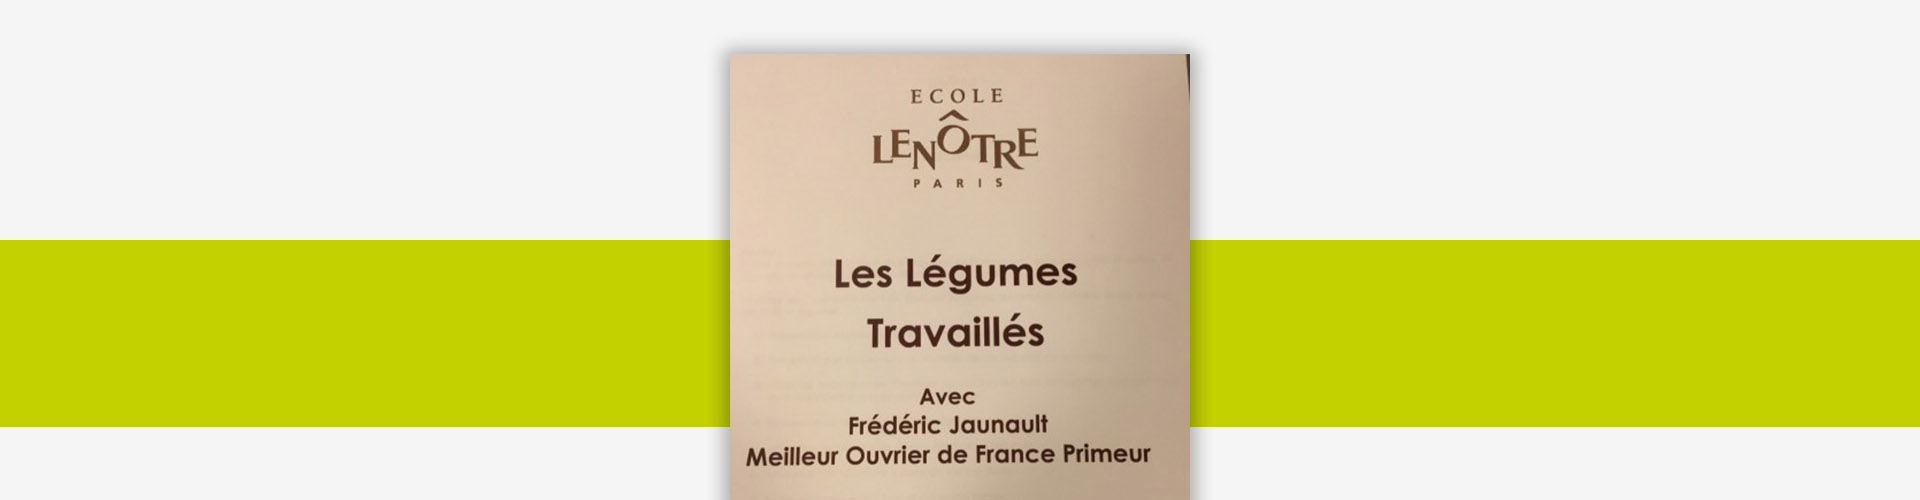 Header Actu École Lenotre - Frederic Jaunault MOF Primeur Fruits Legumes